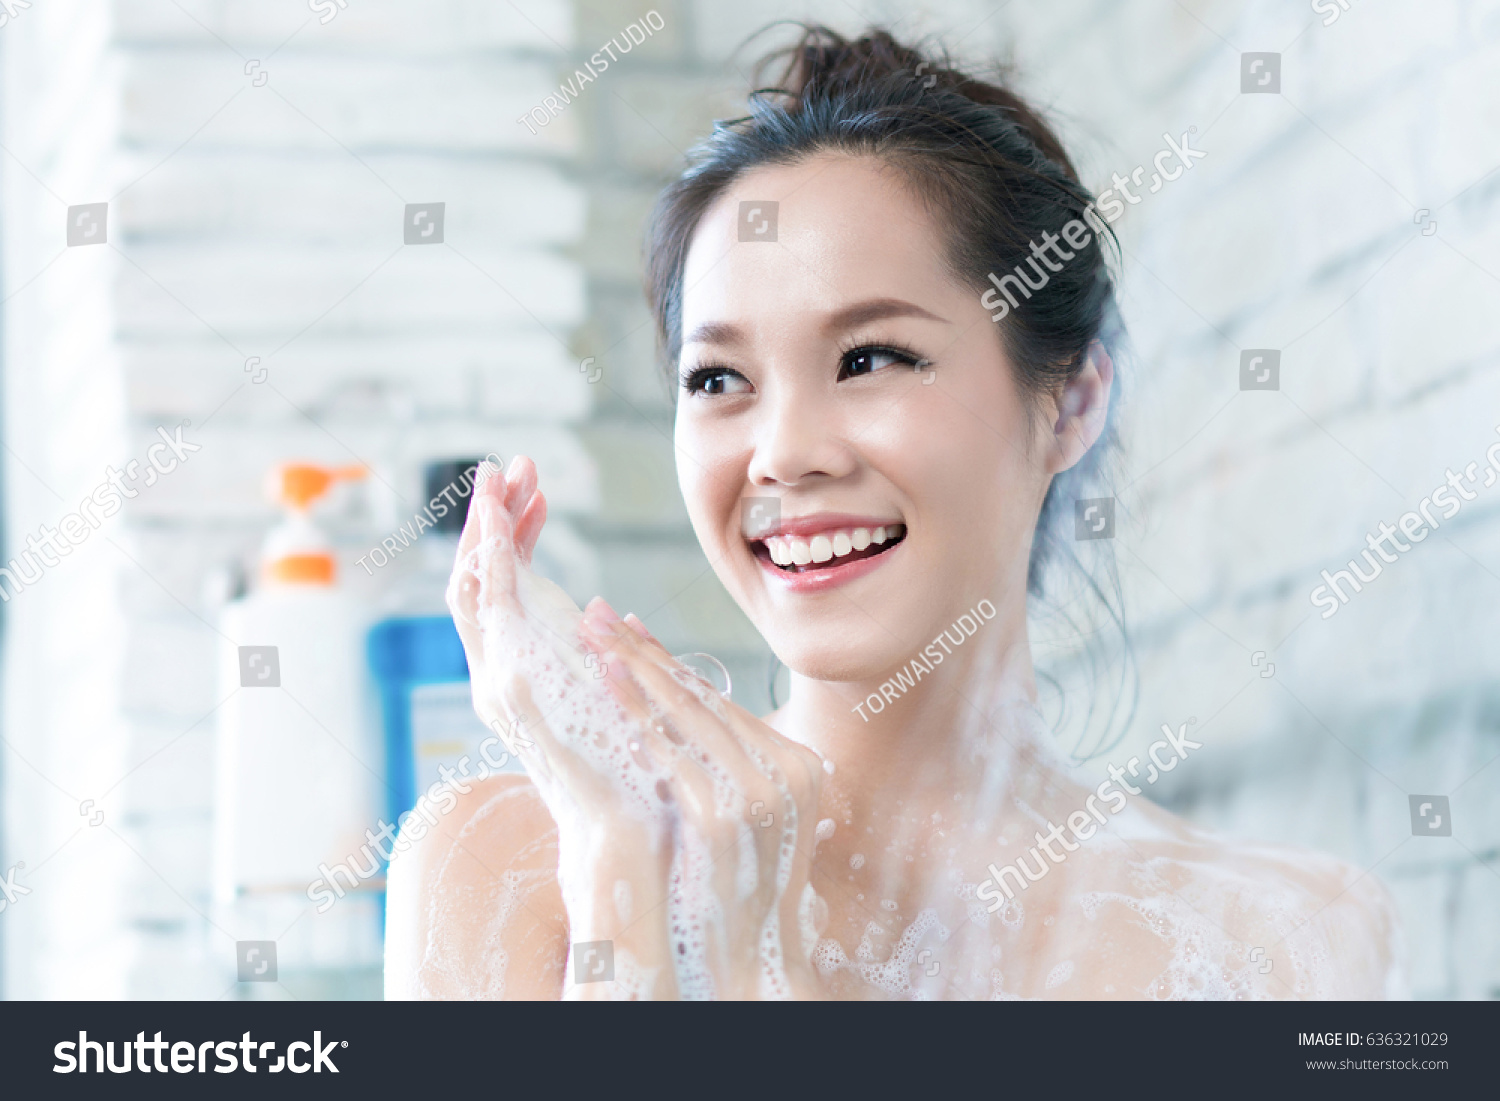 857 Nude Asian Shower Gambar Foto Stok And Vektor Shutterstock